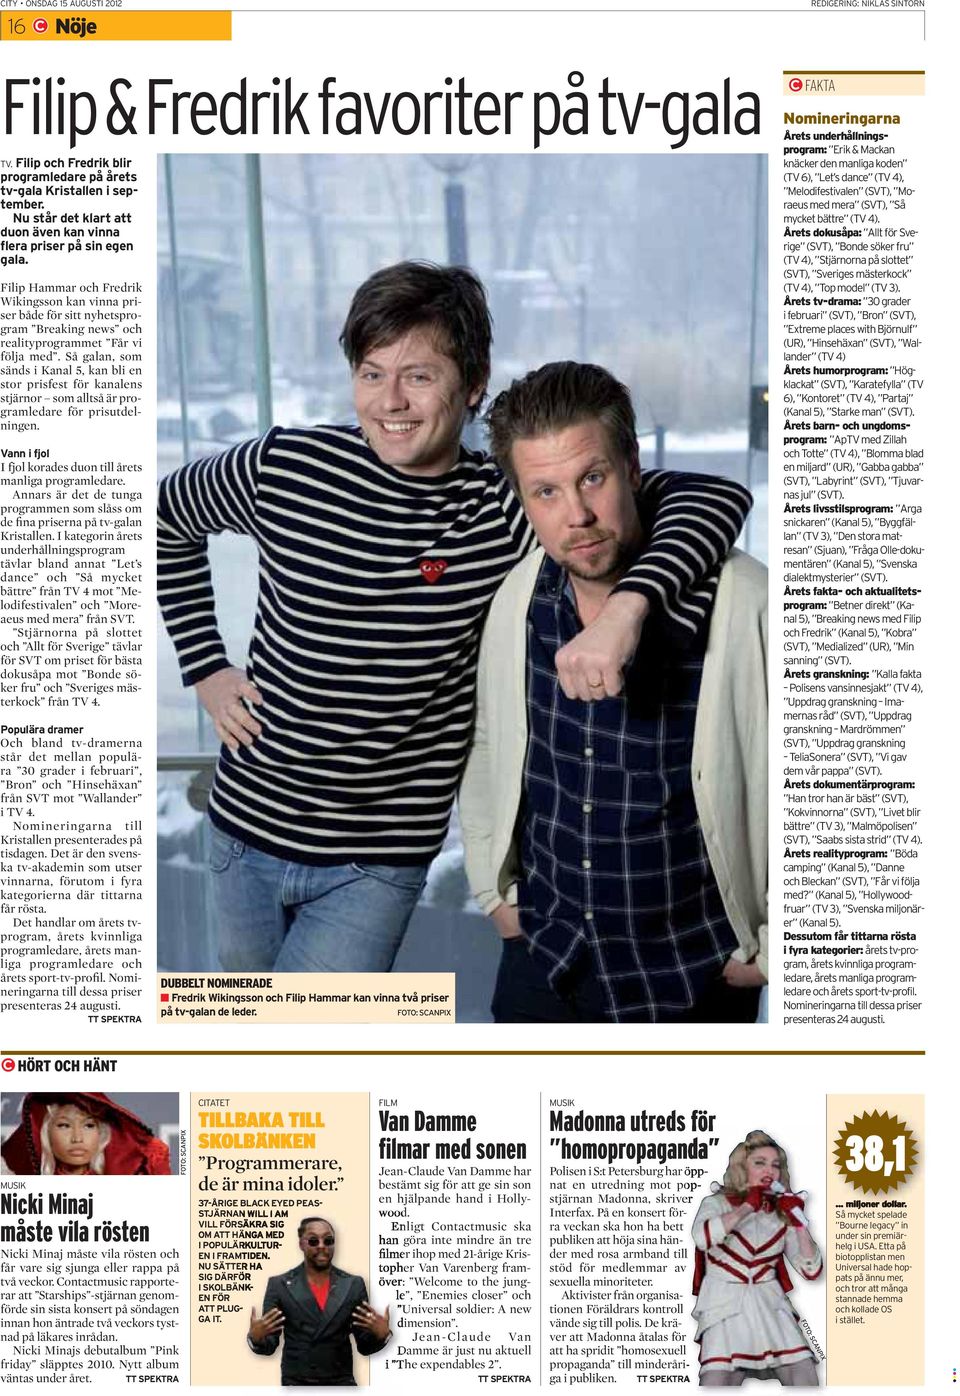 Filip Hammar och Fredrik Wikingsson kan vinna priser både för sitt nyhetsprogram Breaking news och realityprogrammet Får vi följa med.